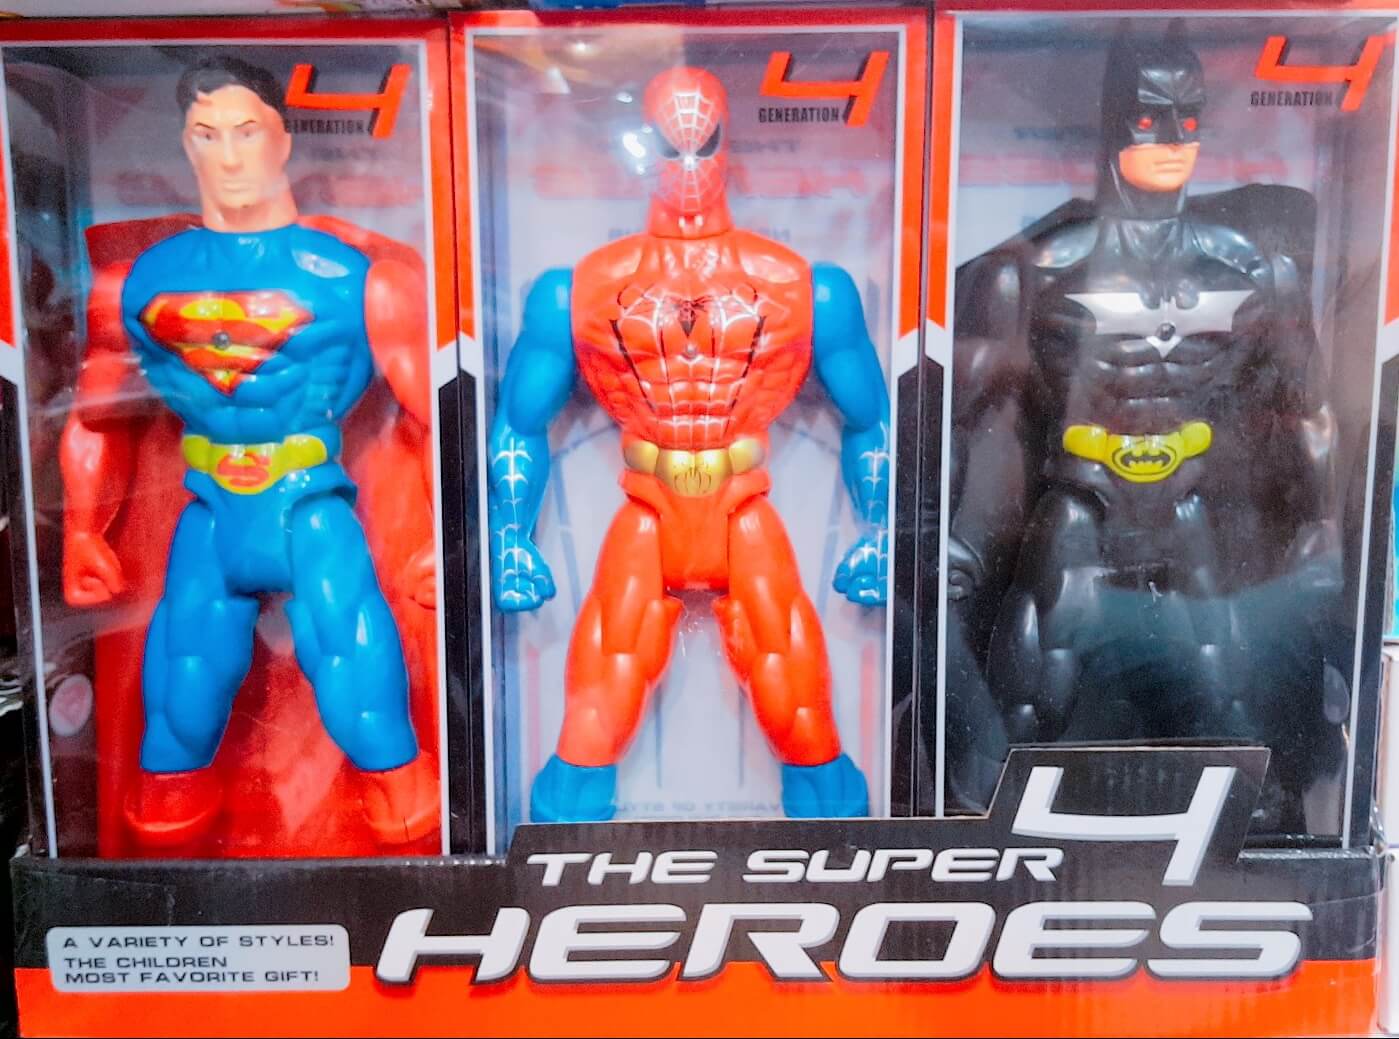 batman superman toys